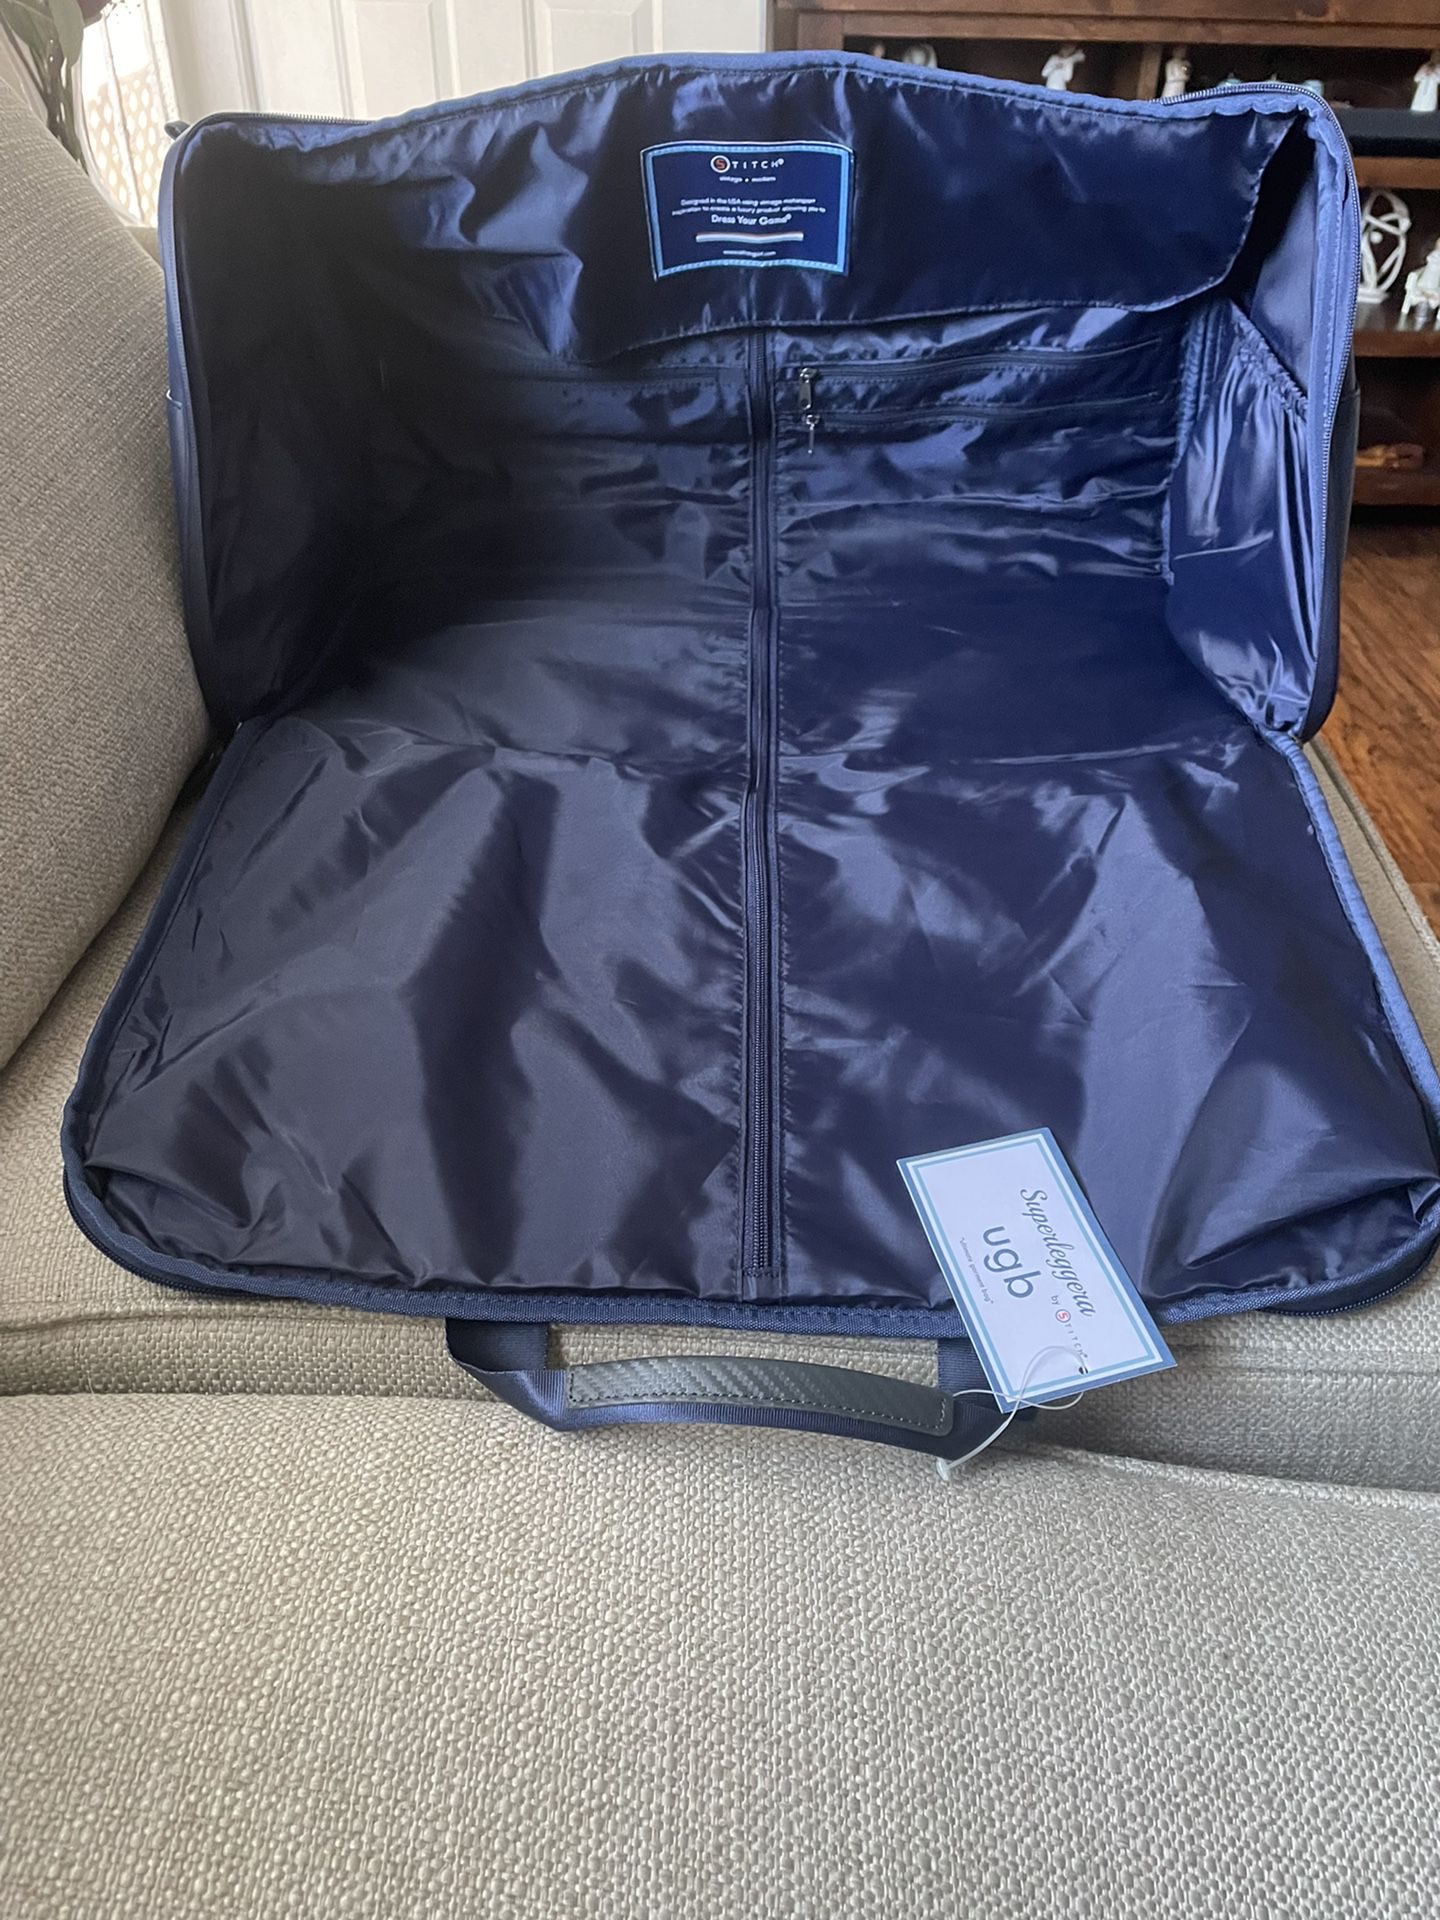 Superleggera By Stitch Ultimate Garment Bag, Luggage, Duffel, Sport Bag, Gym Bag, Golf Bag.